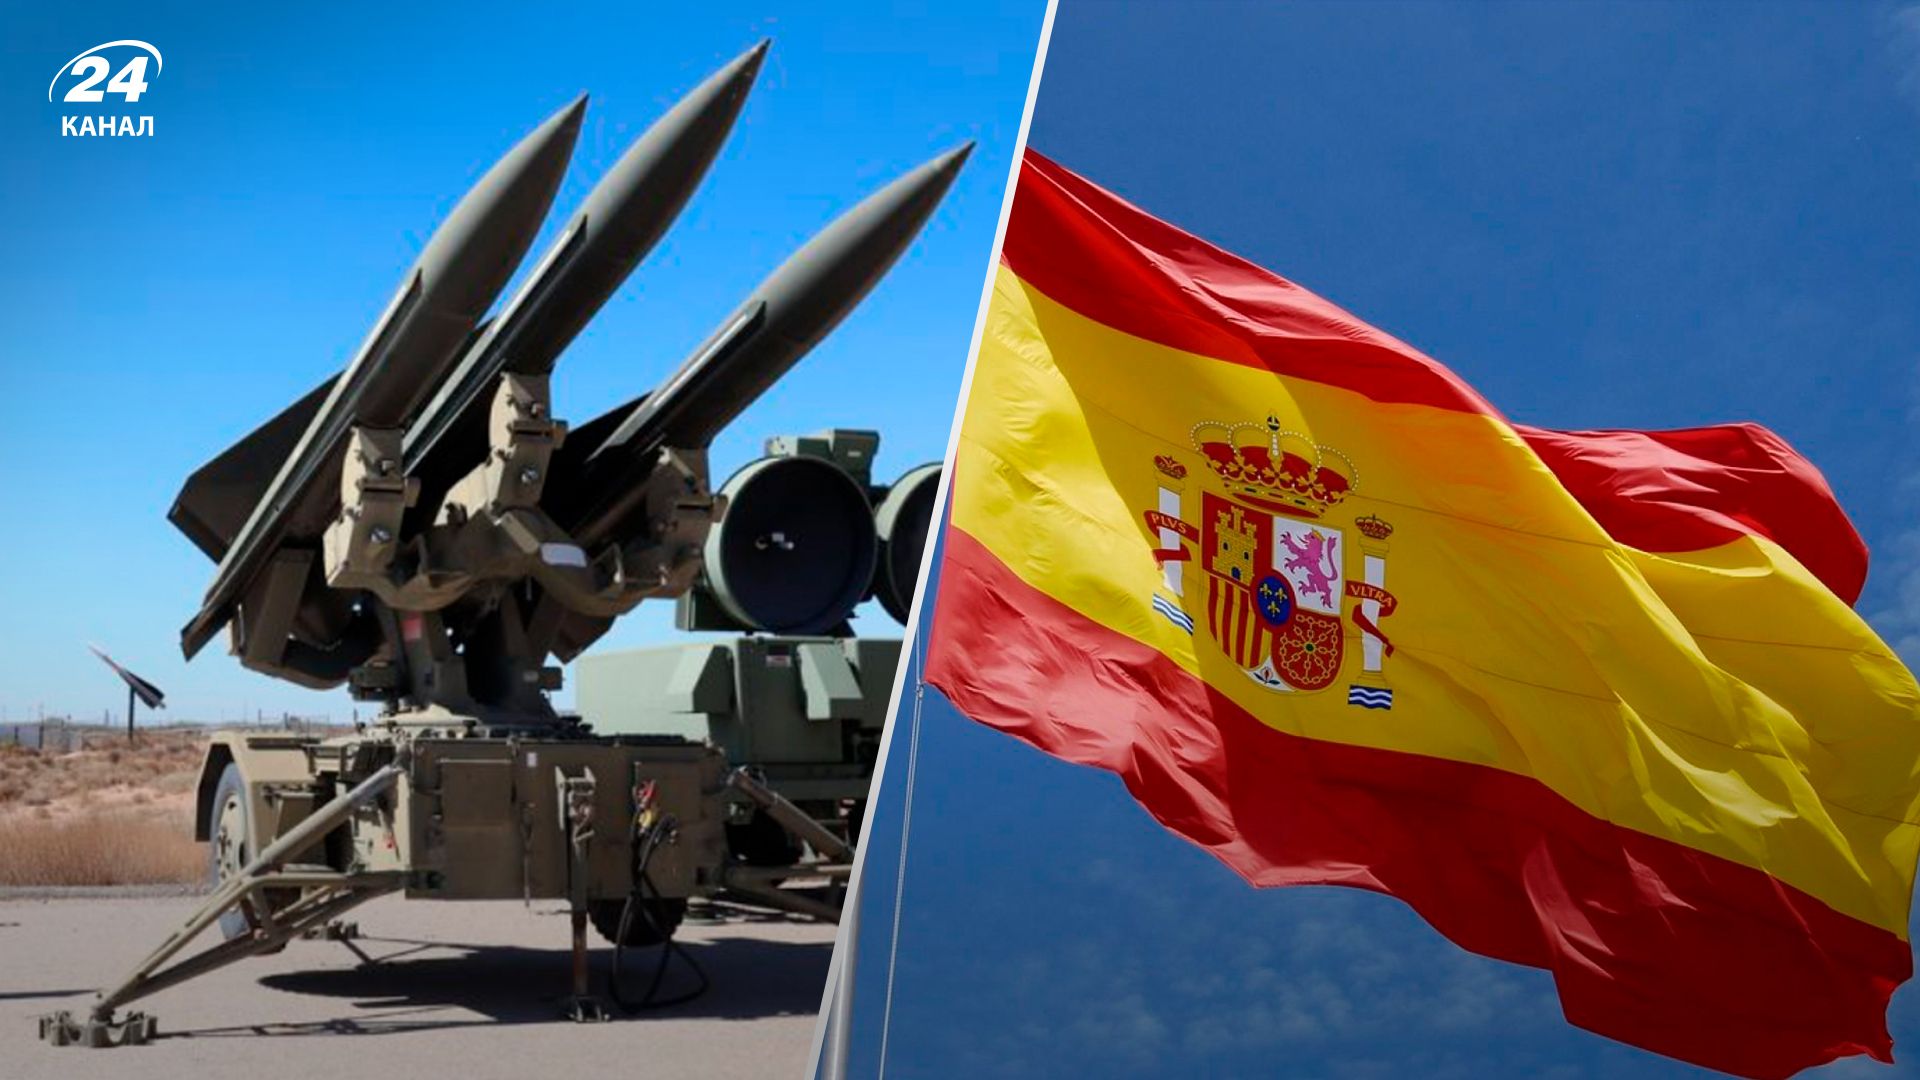 ПВО Hawk, Испания – обзор и технические характеристики